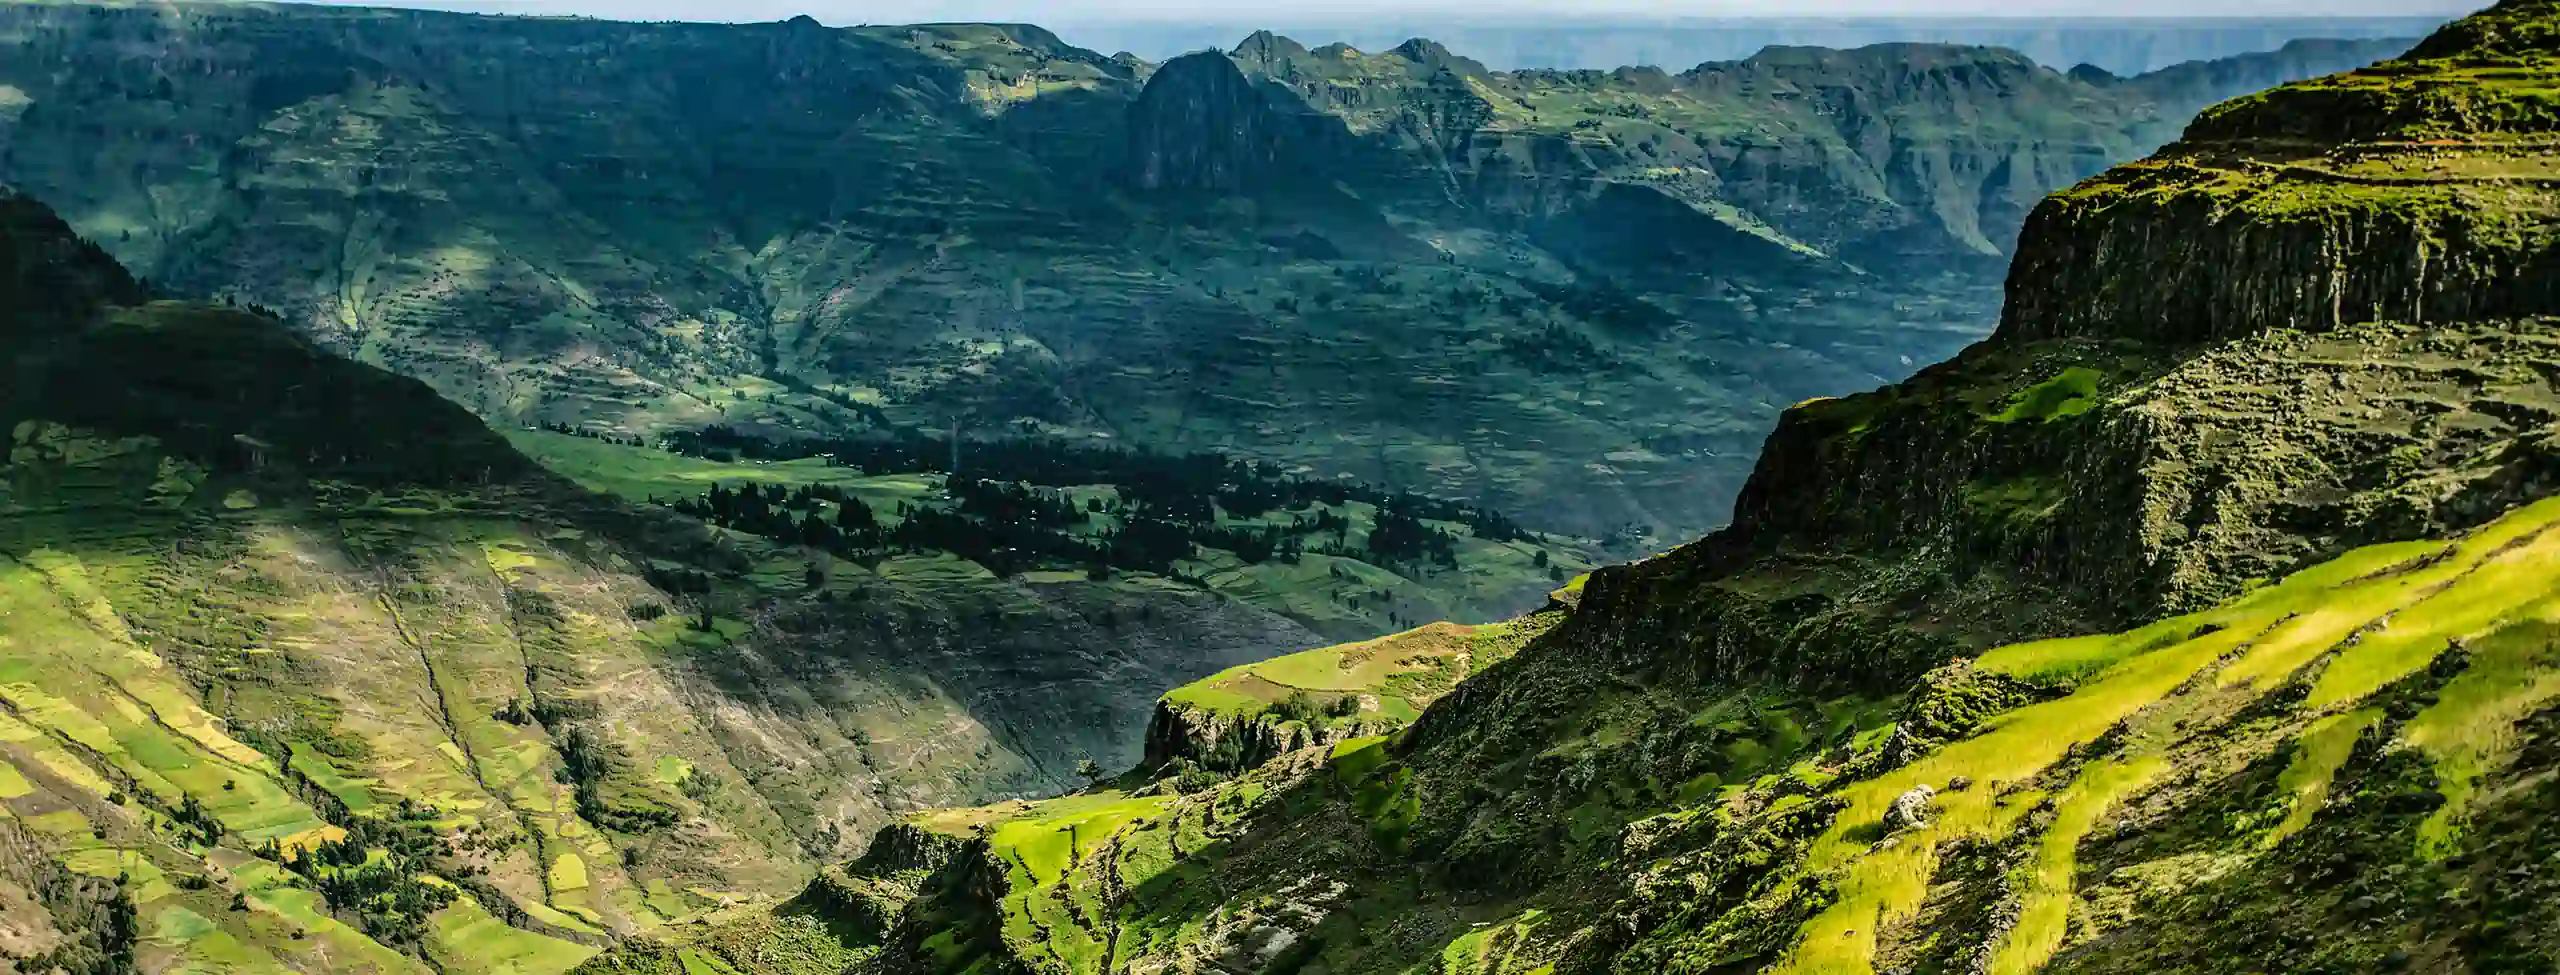 Ethiopia mountain